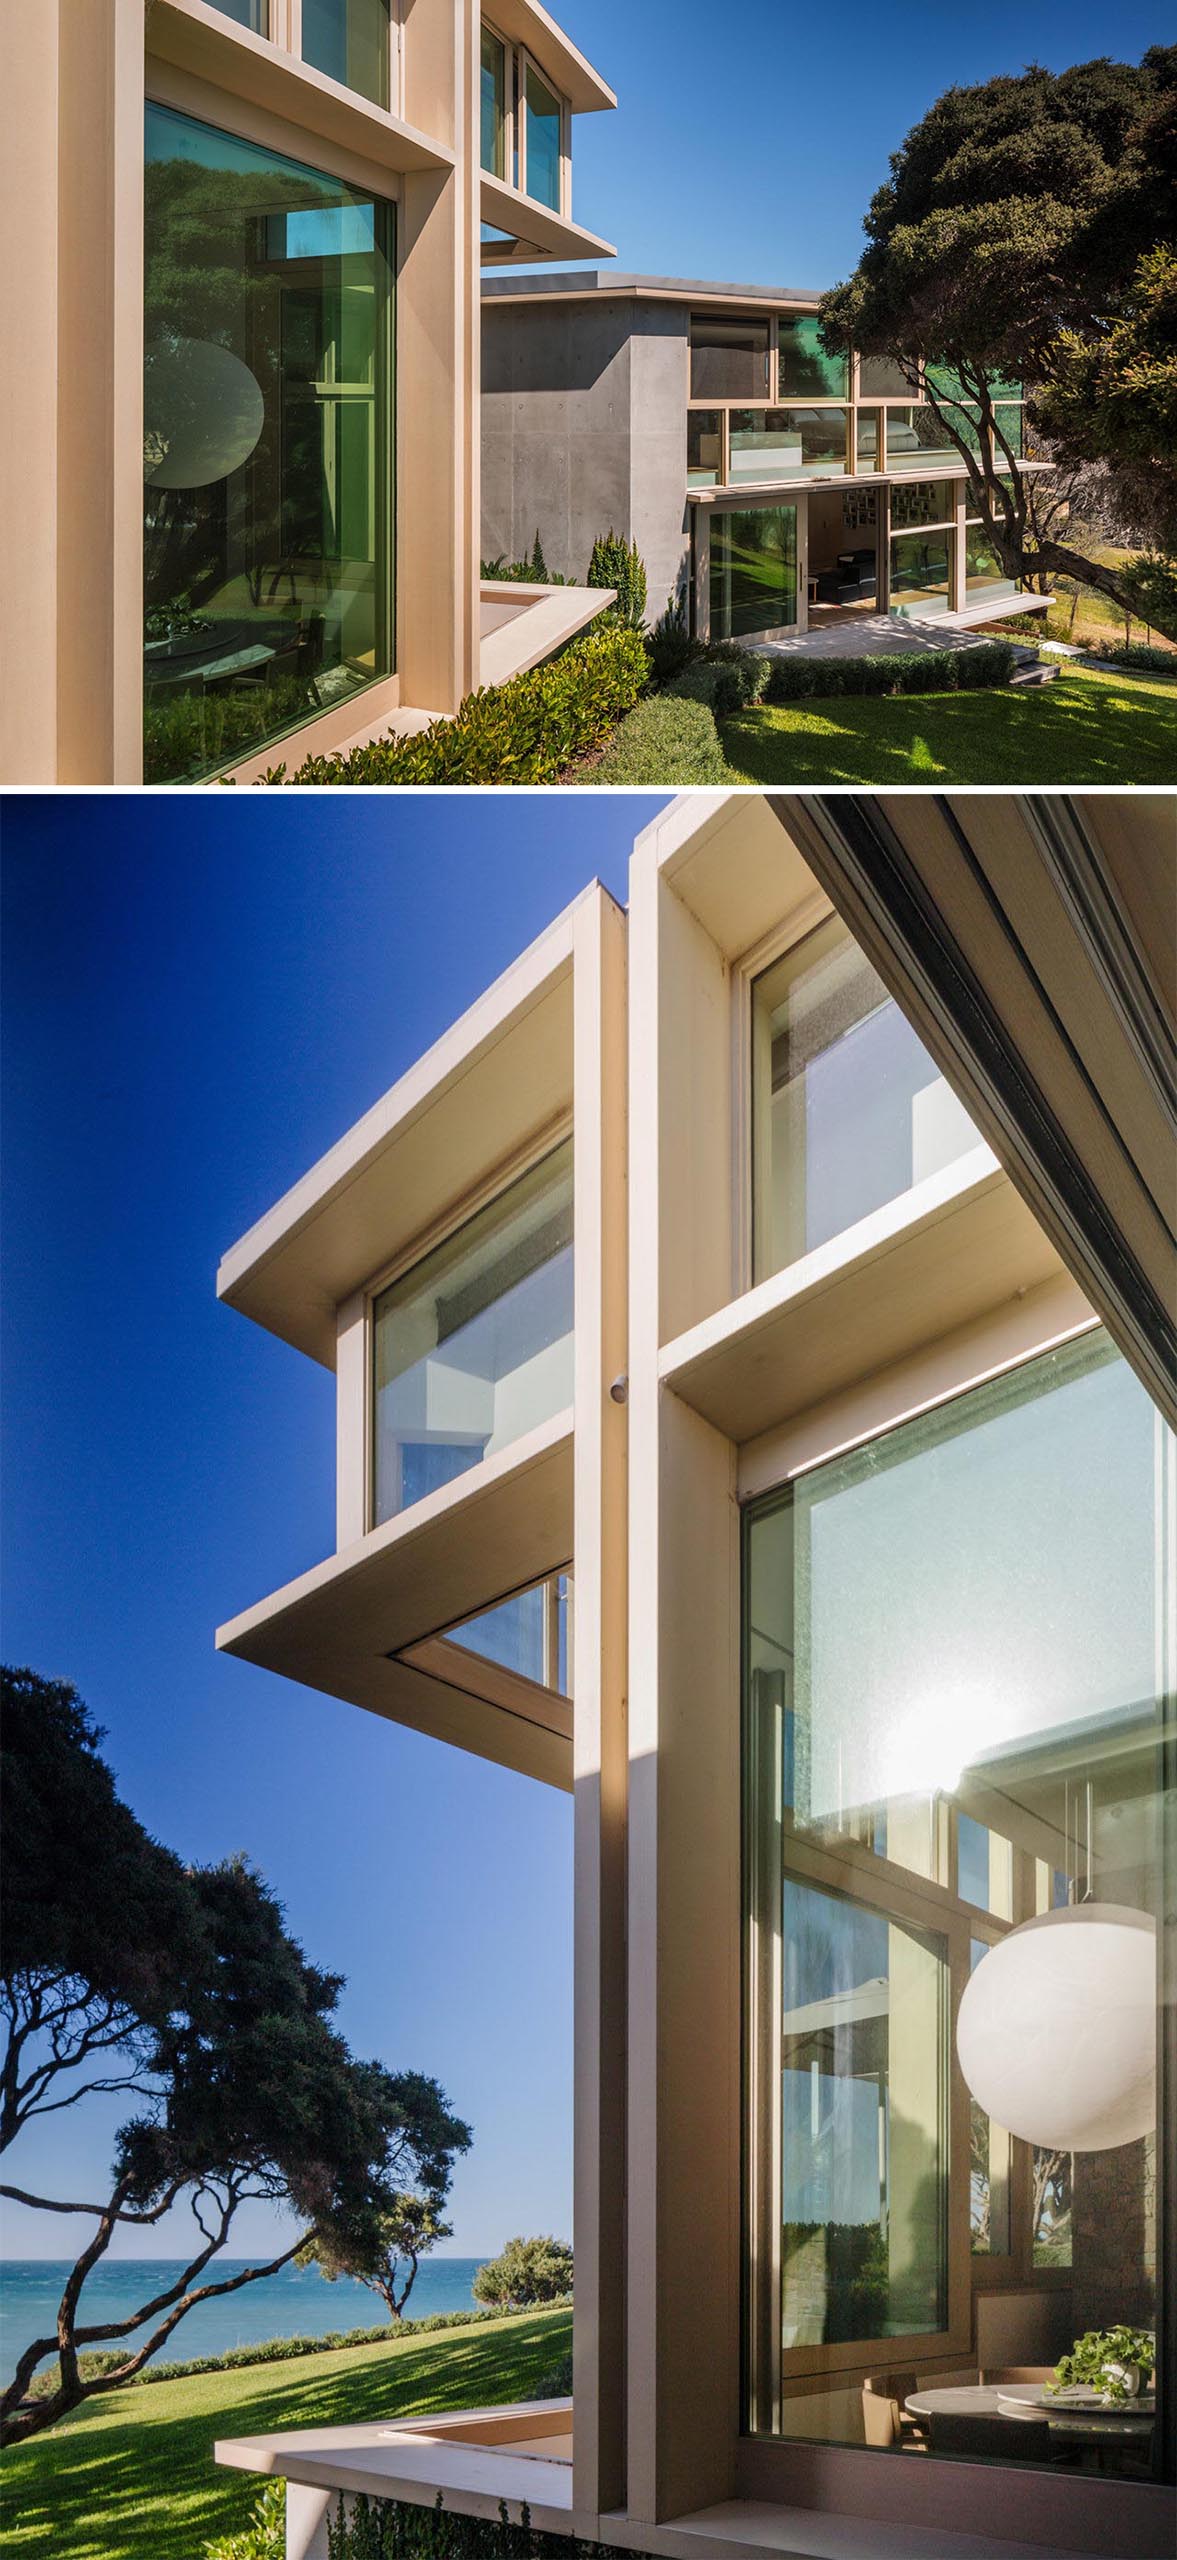 Окна в деревянных рамах открывают интерьер этого современного дома.